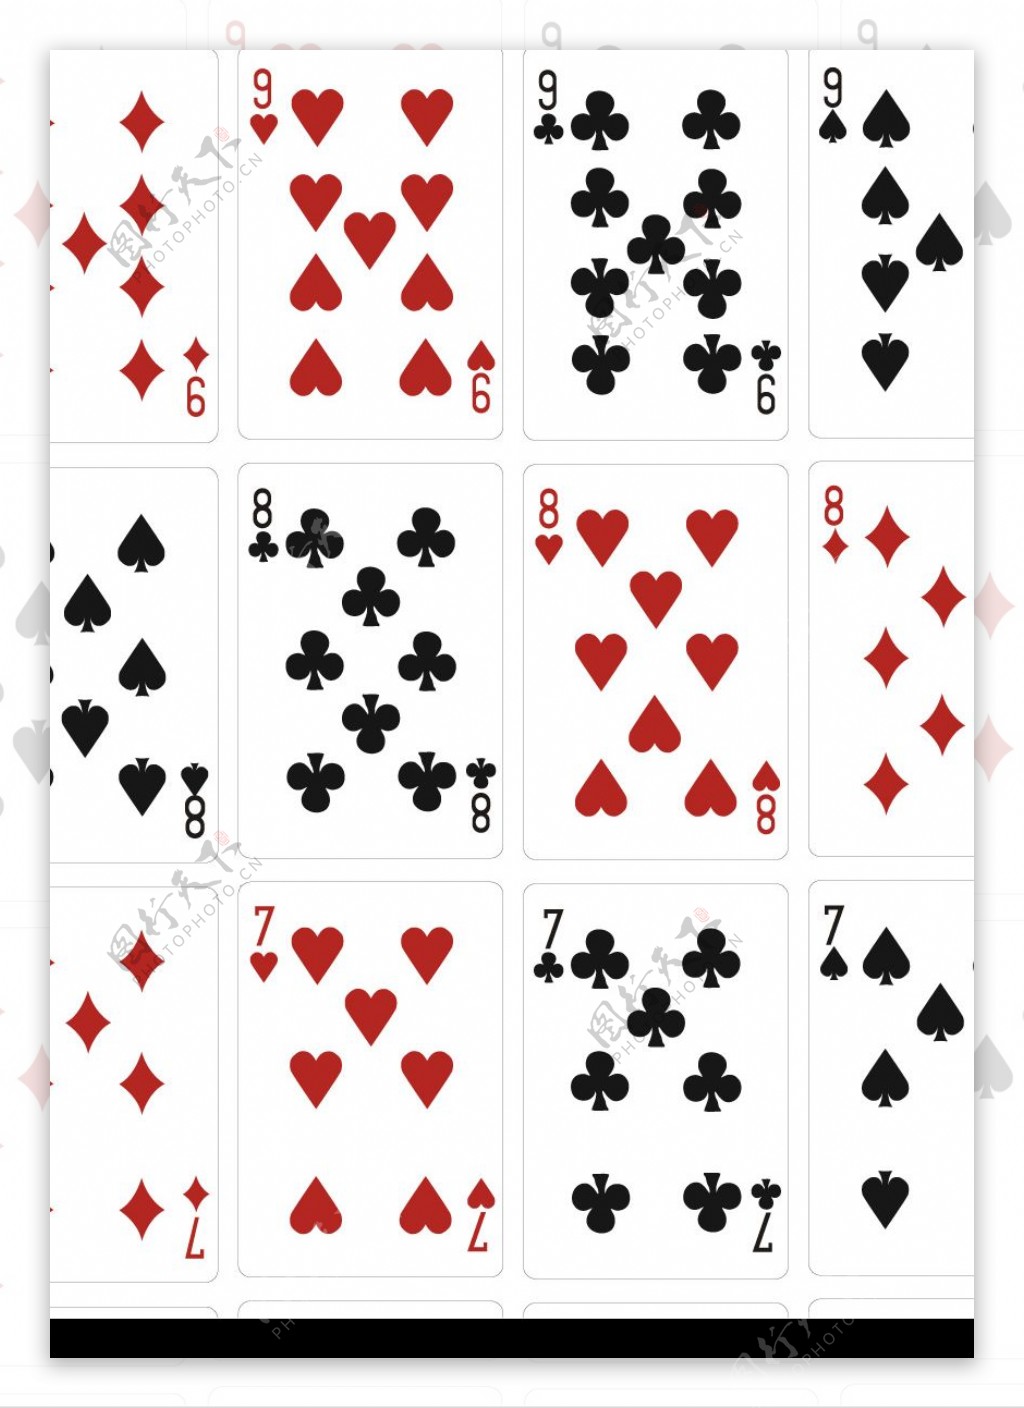 扑克牌矢量素材图片